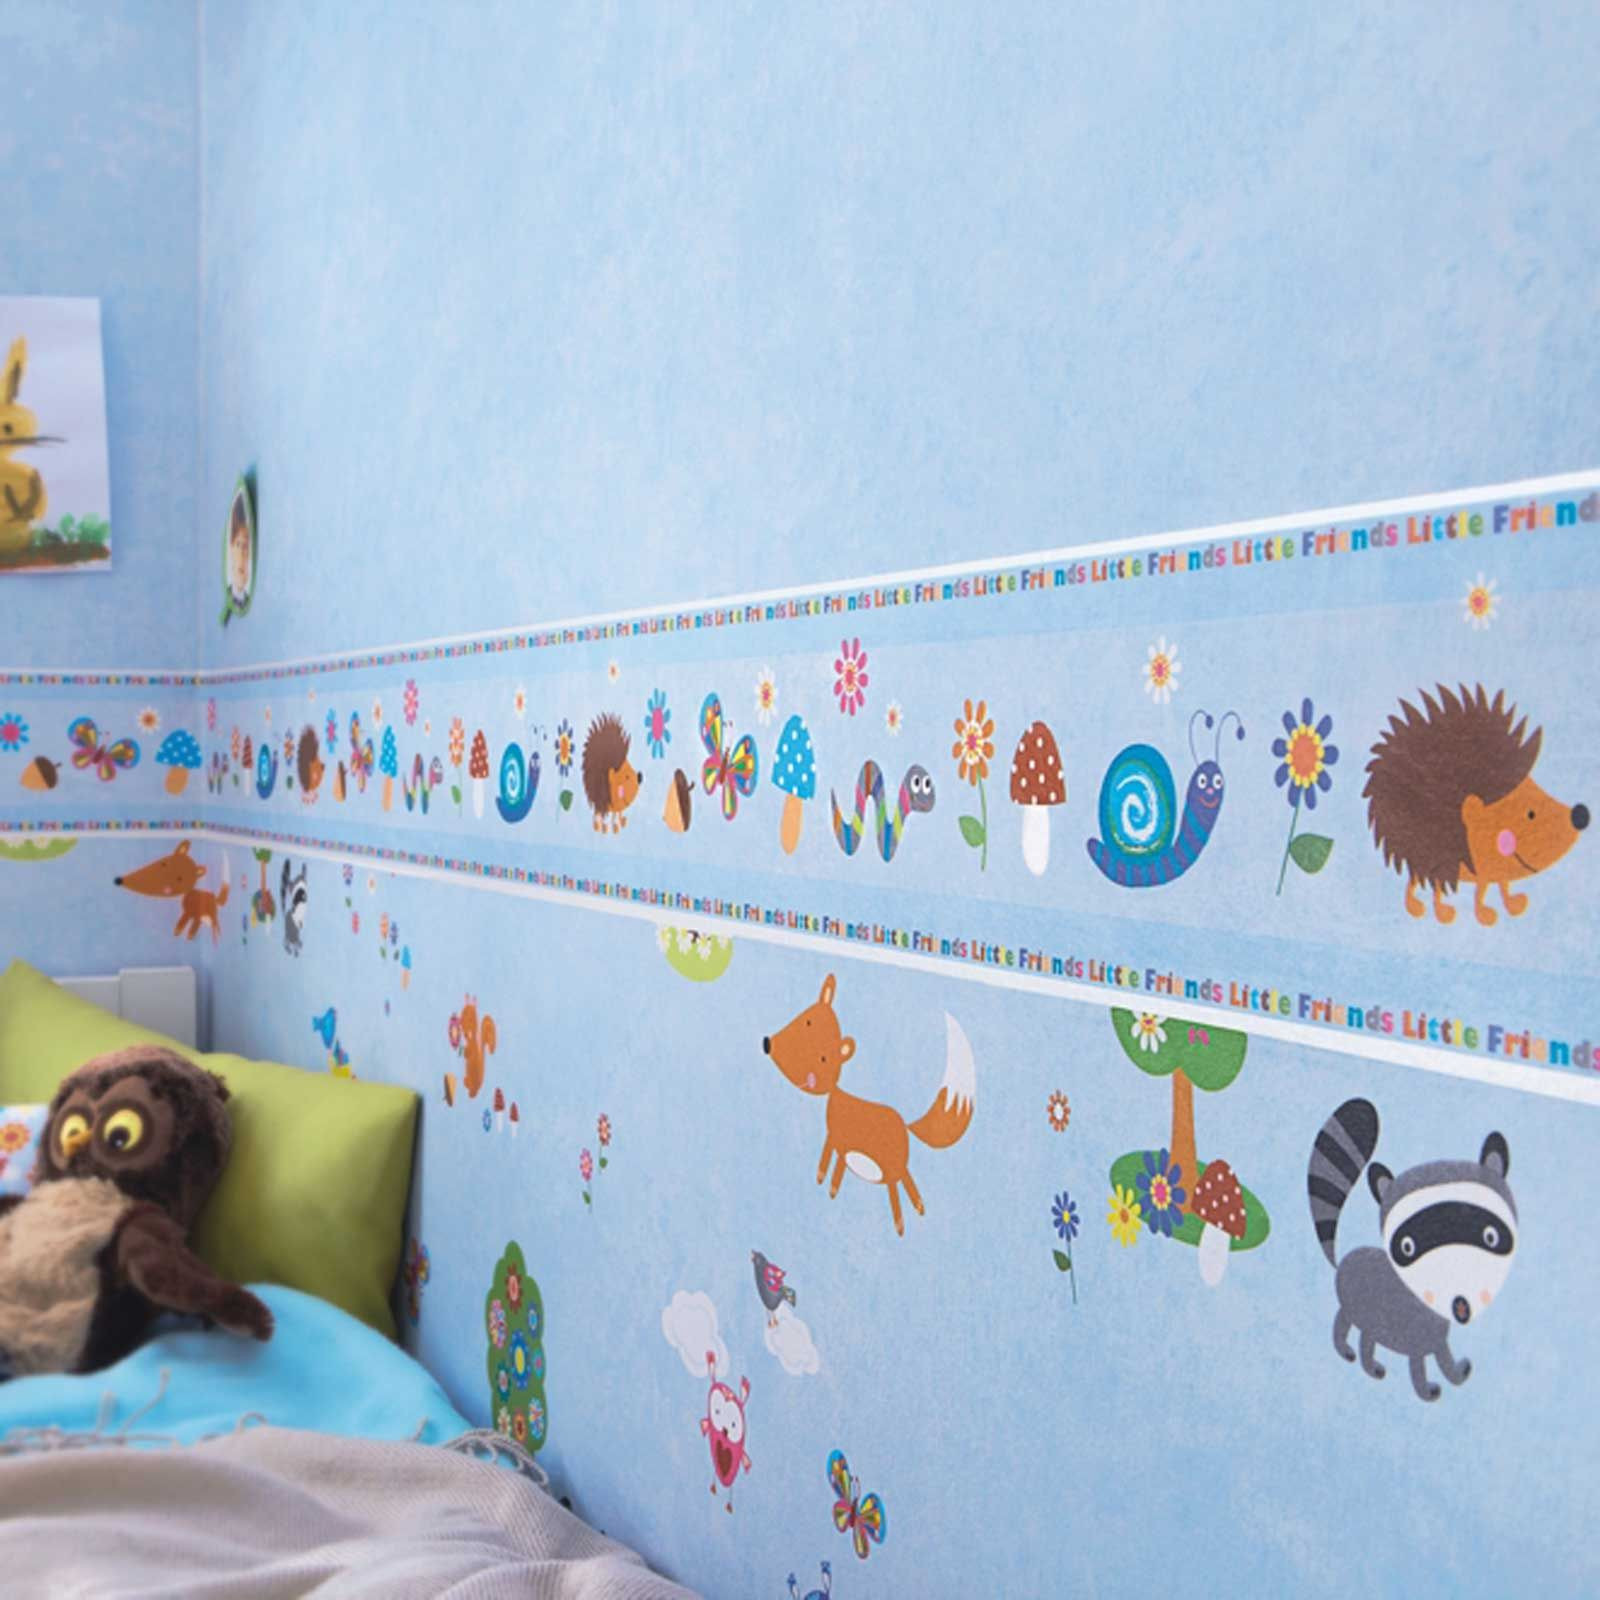 Wallpaper Borders For Kids Room
 BOYS THEMED WALLPAPER BORDERS KIDS BEDROOM CARS DINOSAUR